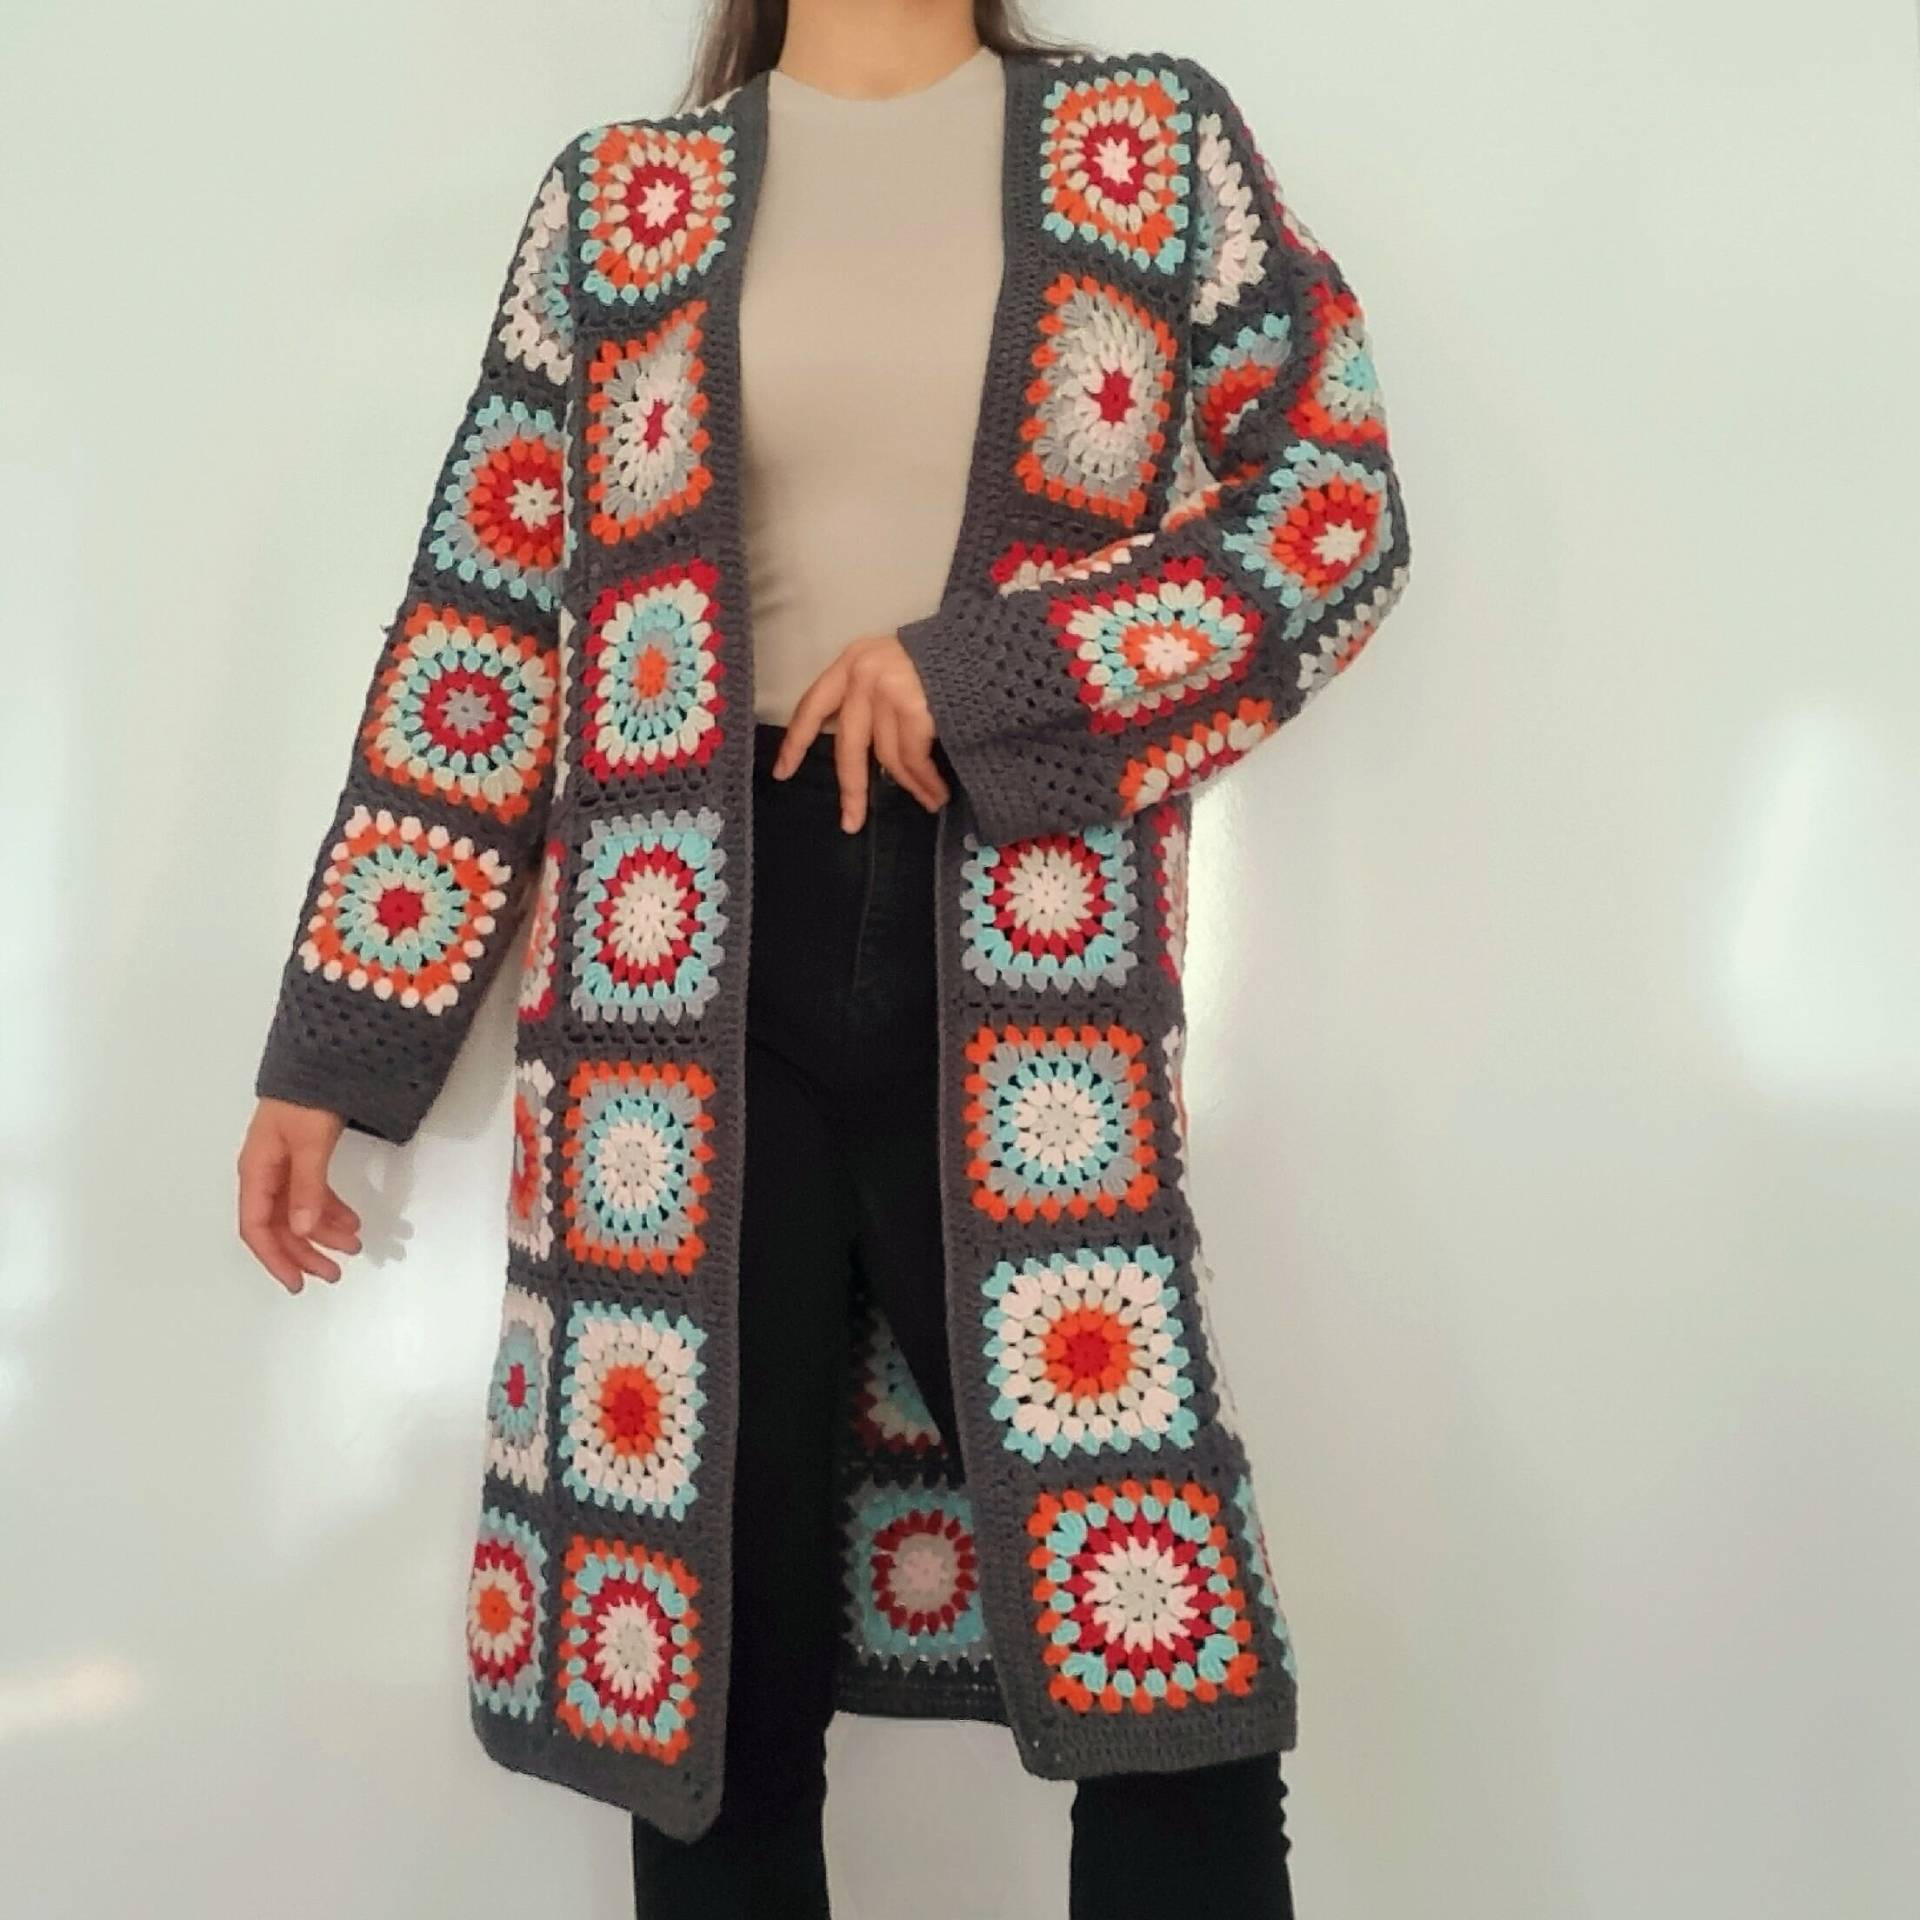 Grandma Square Gardigan/Häkelmantel Oversize-Strickjacke Afgan Mantel Häkeljacke Strickjacke Für Frauen Hippie von Binbiryama